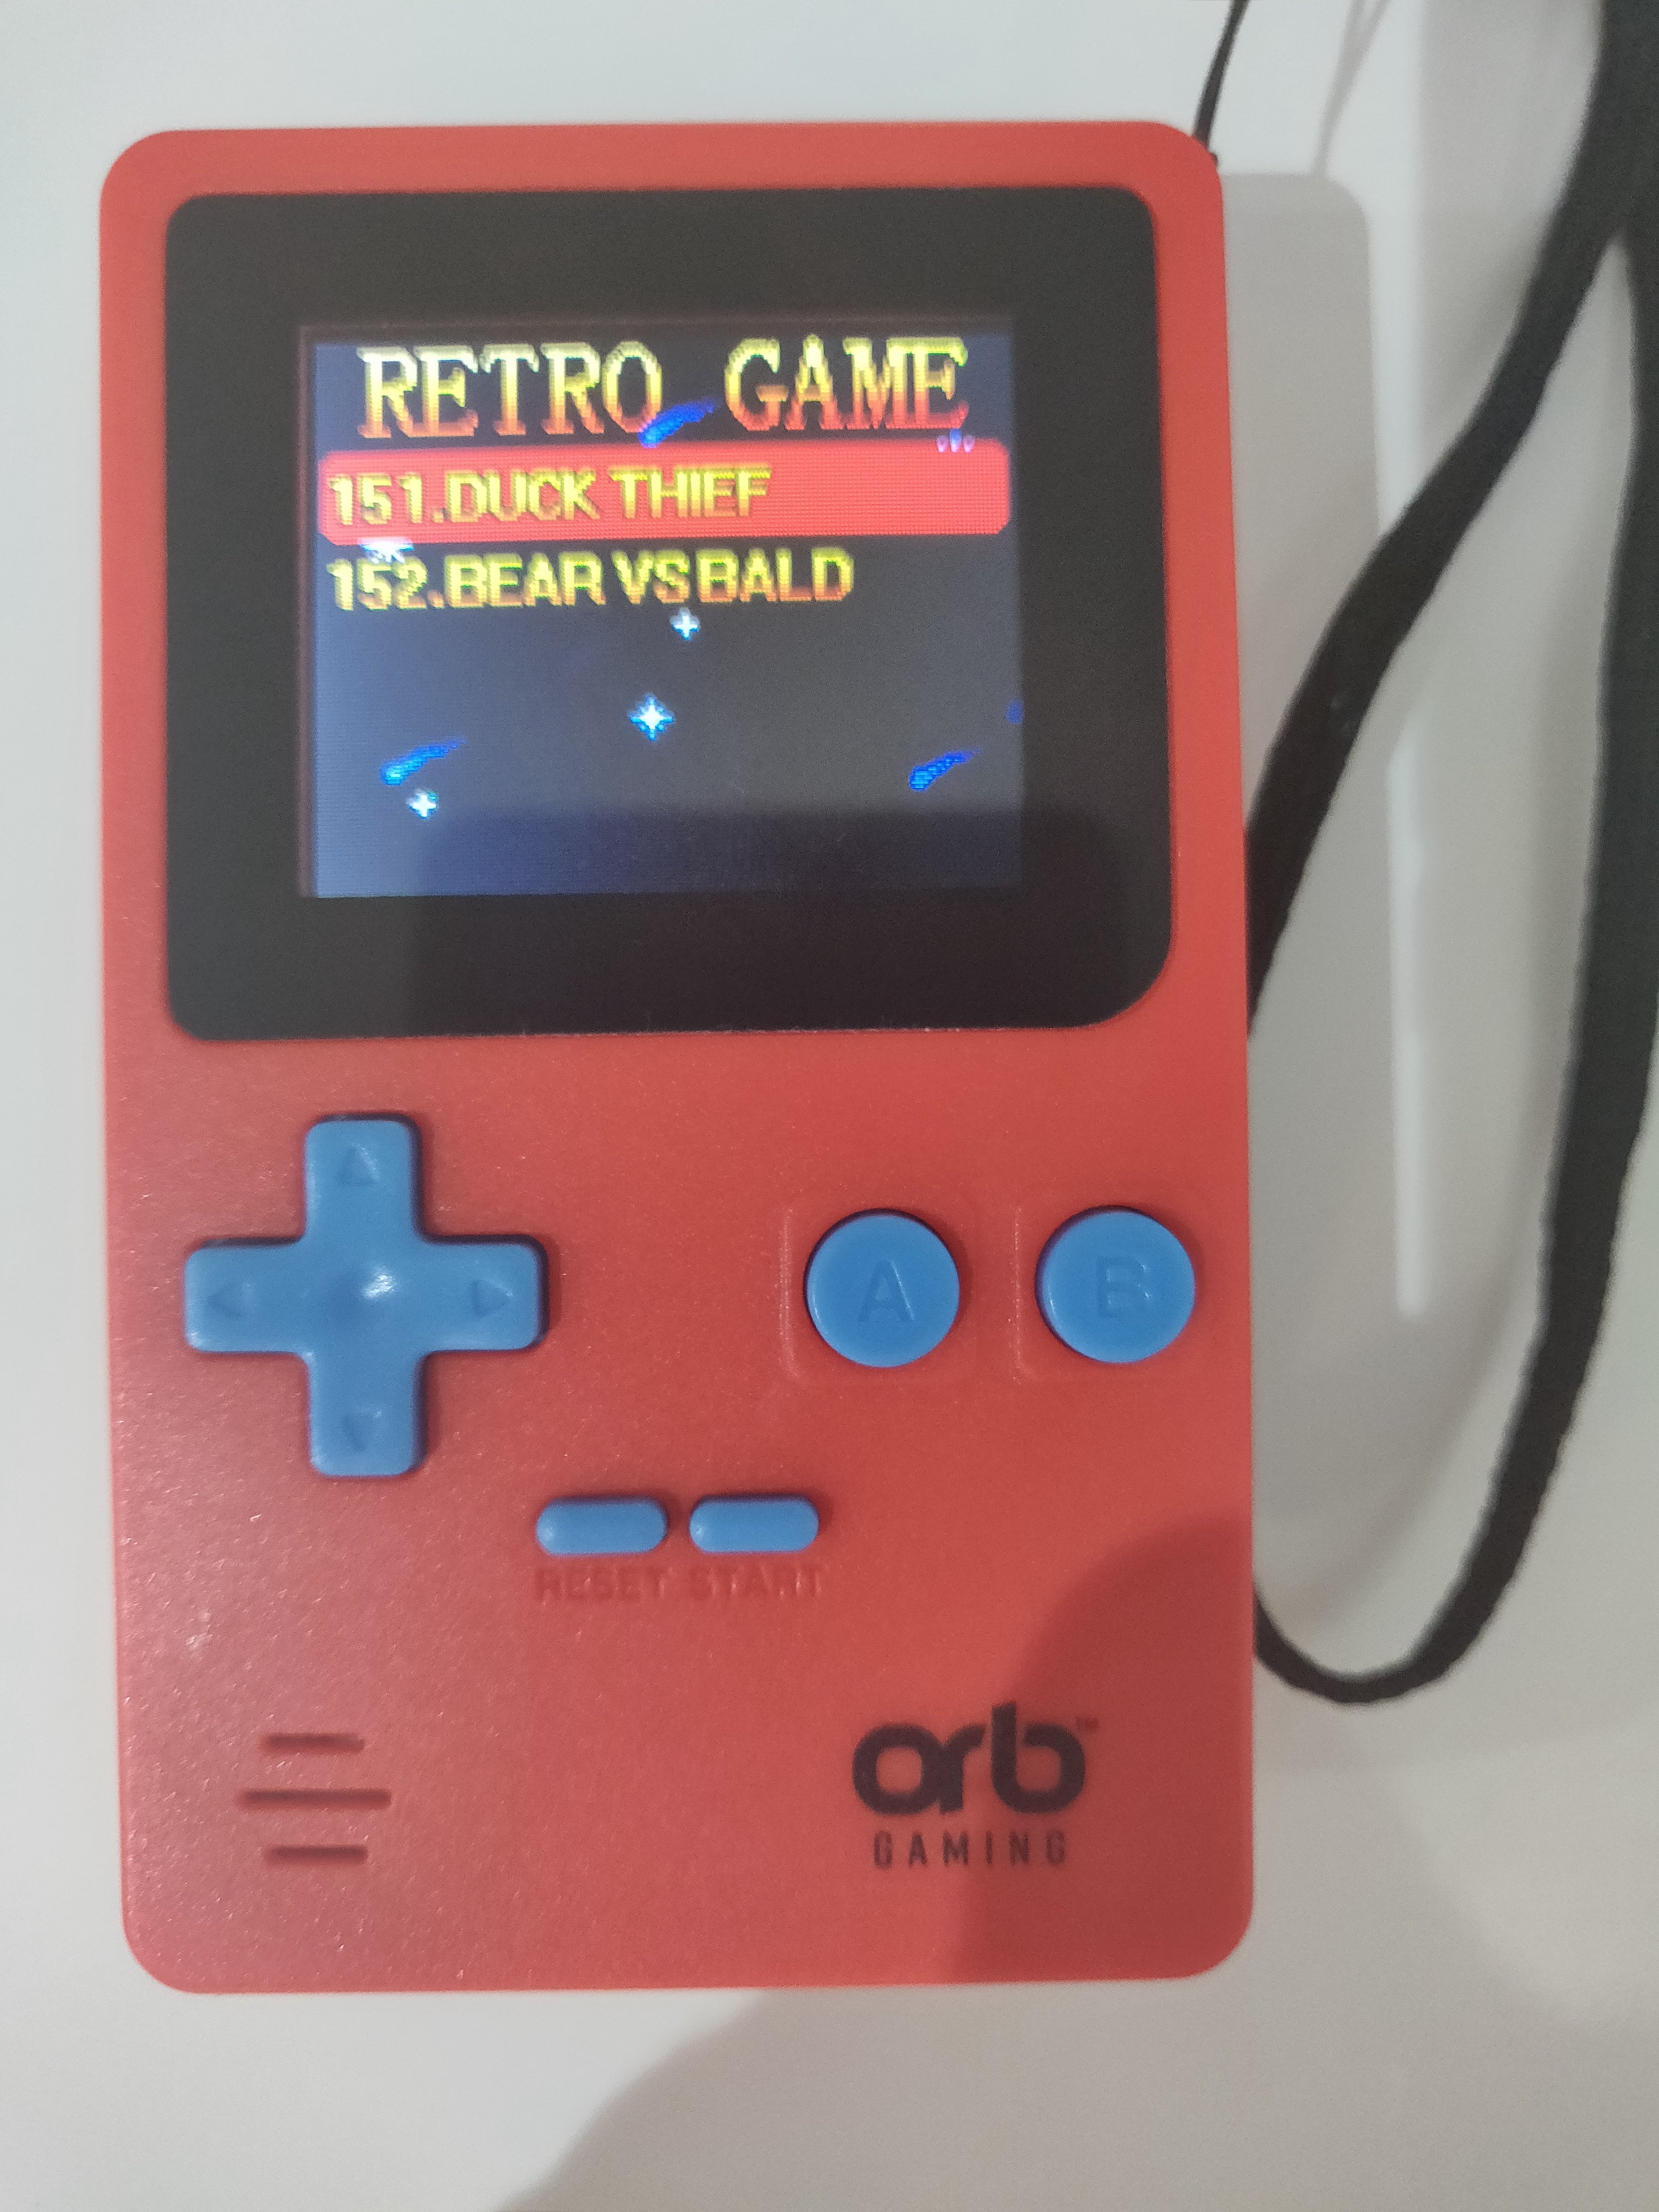 orb retro games console